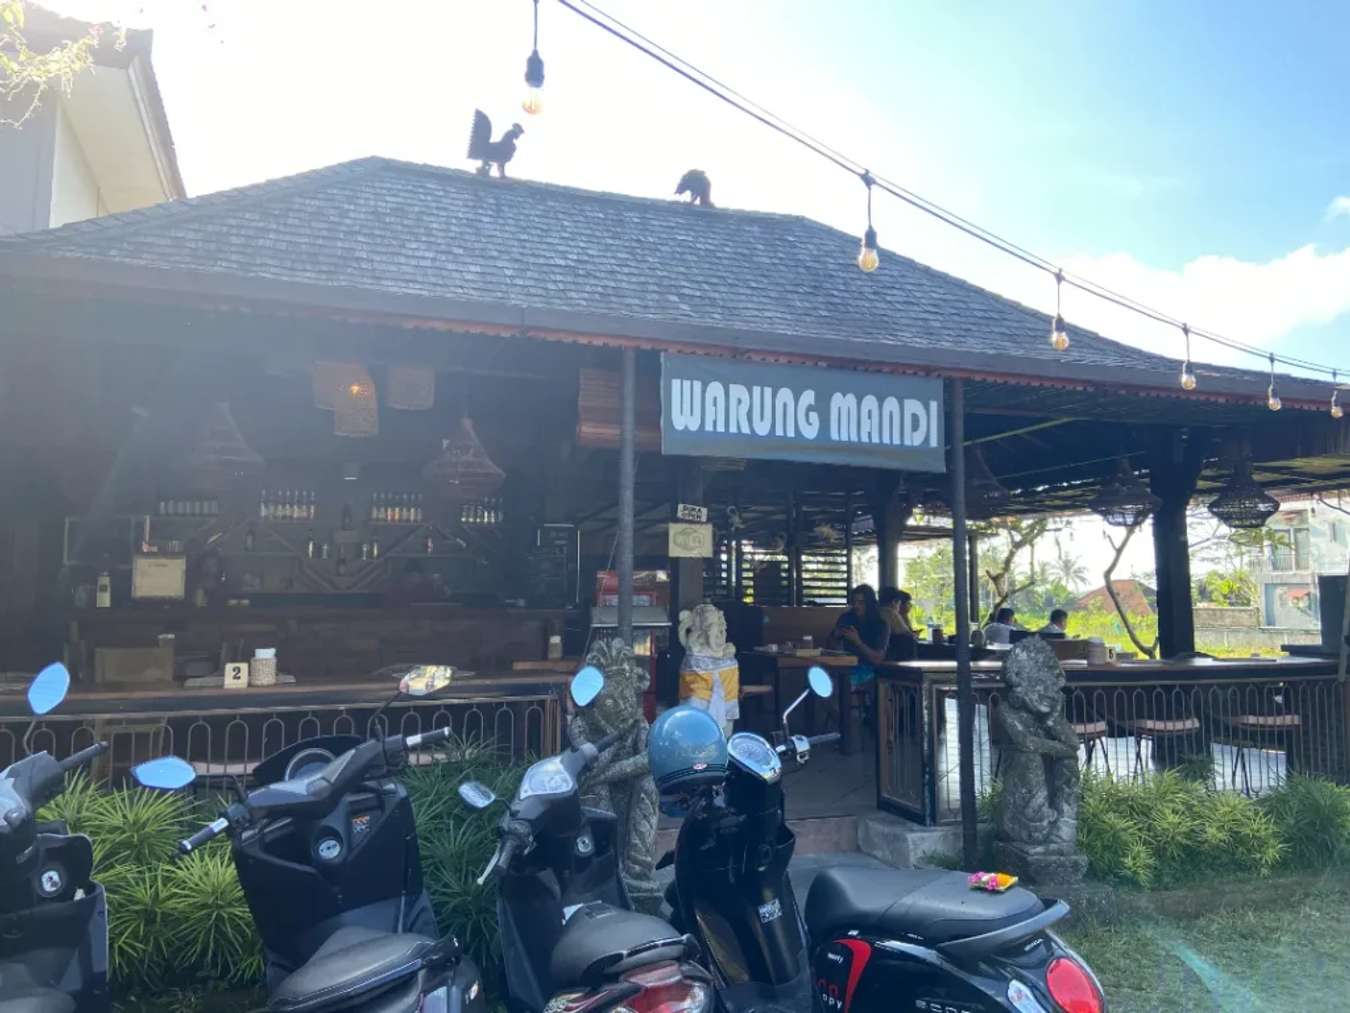 Warung trong tiếng Indonesia có nghĩa là nhà hàng